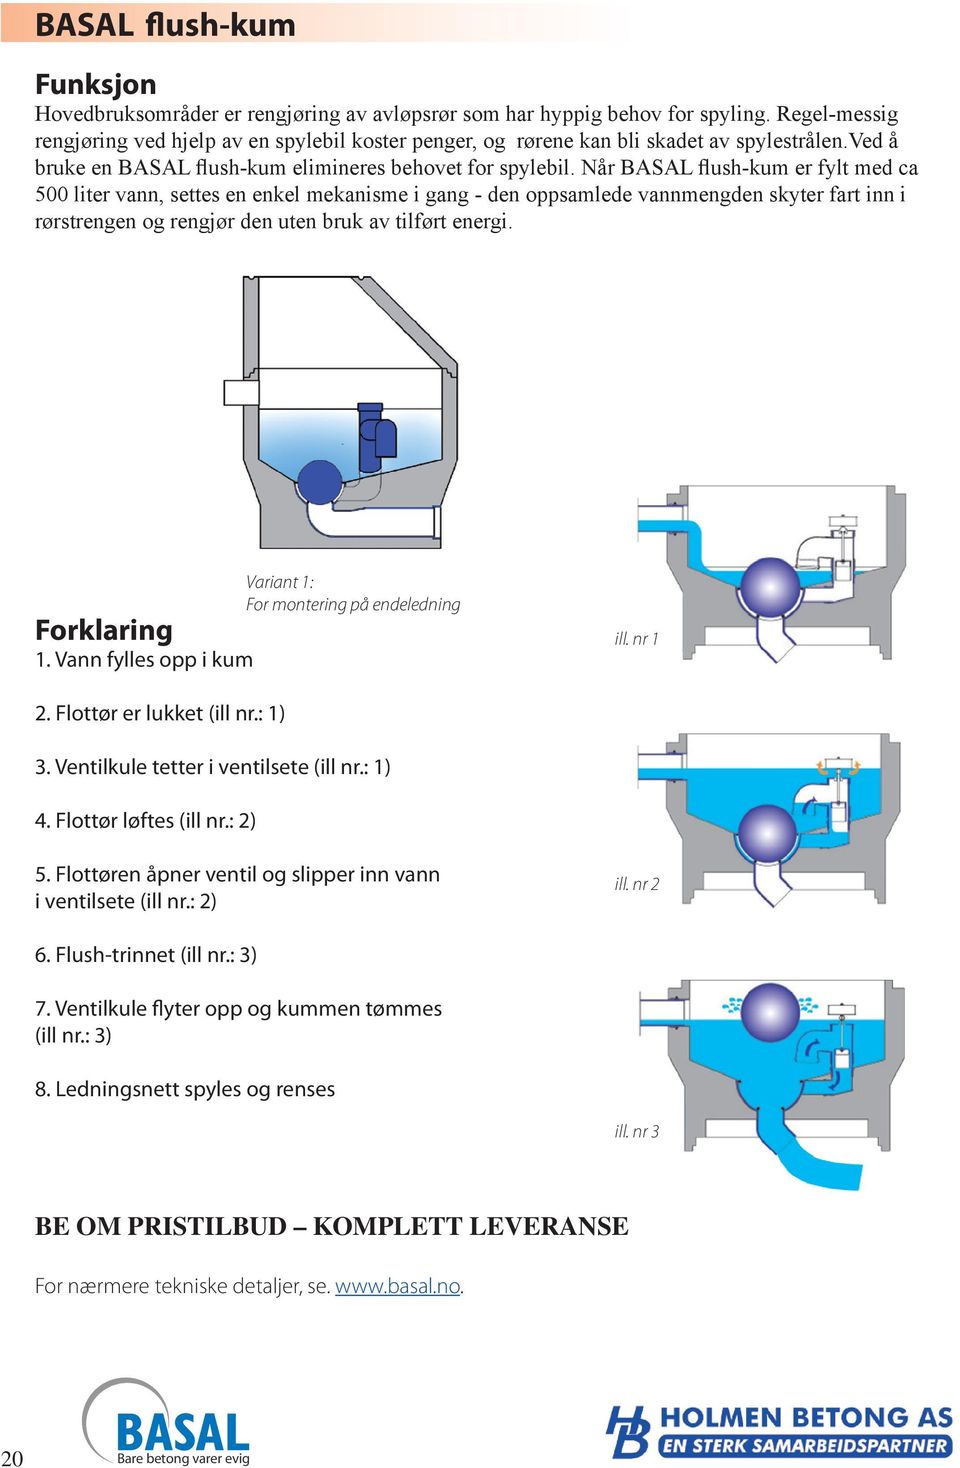 Når BASAL flush-kum er fylt med ca 500 liter vann, settes en enkel mekanisme i gang - den oppsamlede vannmengden skyter fart inn i rørstrengen og rengjør den uten bruk av tilført energi.